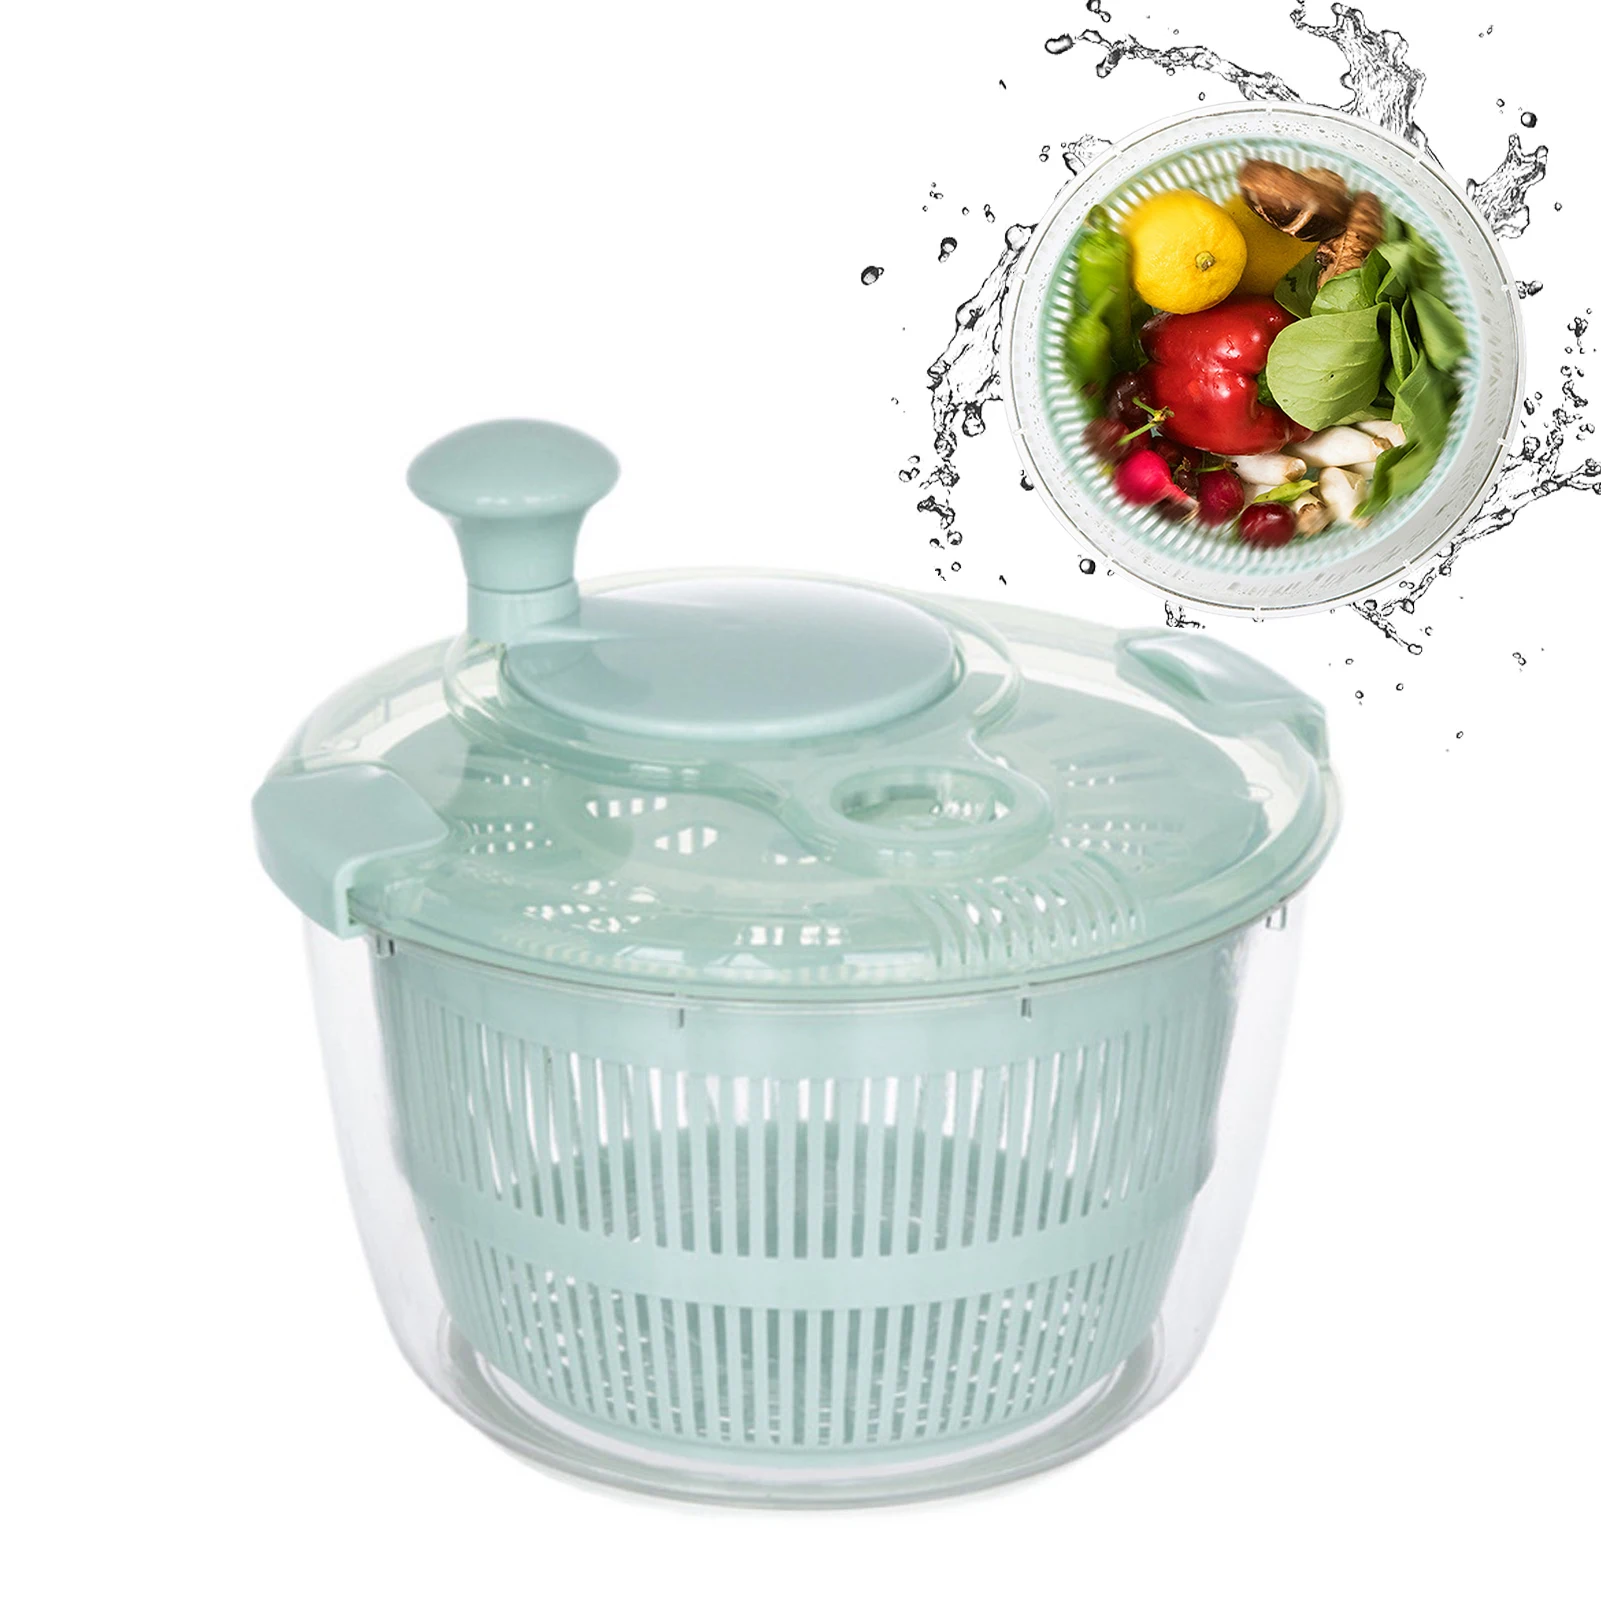 

Сервировочная чаша для салата, овощей, фруктов, Легкая очистка, сушка, мытье, съемный пластиковый ручной кухонный инструмент, ежедневное ручное управление